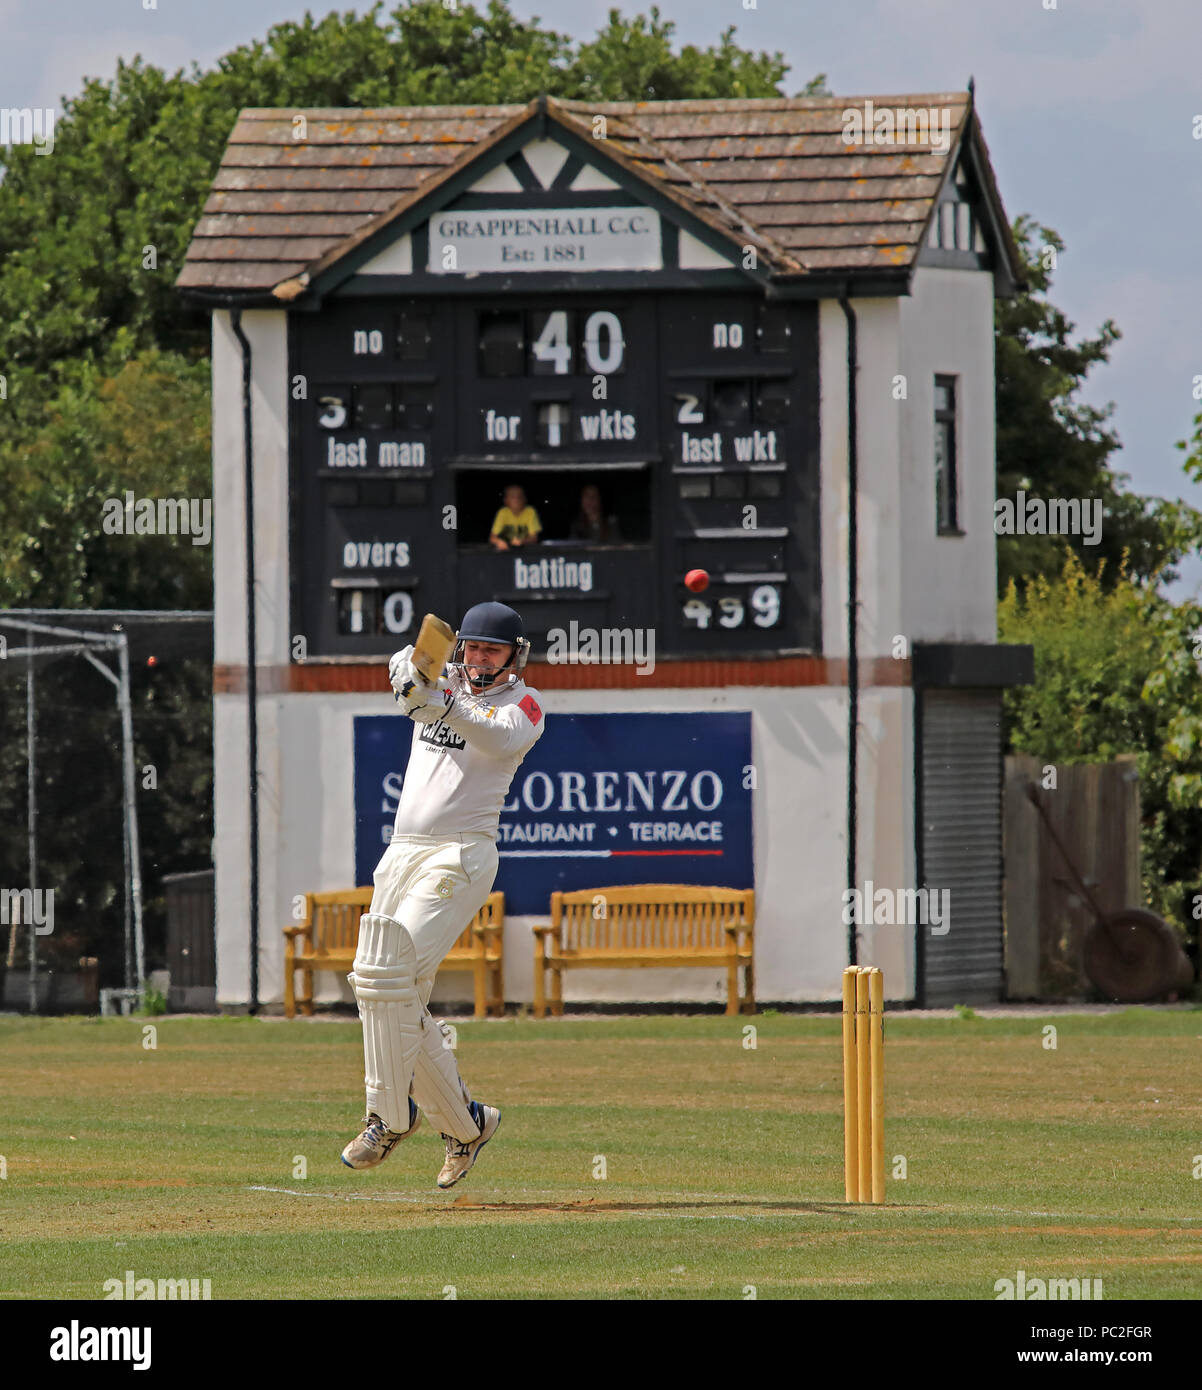 CC ( Grappers Grappenhall ) lecture d'Alderley Edge Cricket Club, à Large Voie, Grappenhall Warrington, Cheshire, Village, North West England, UK Banque D'Images